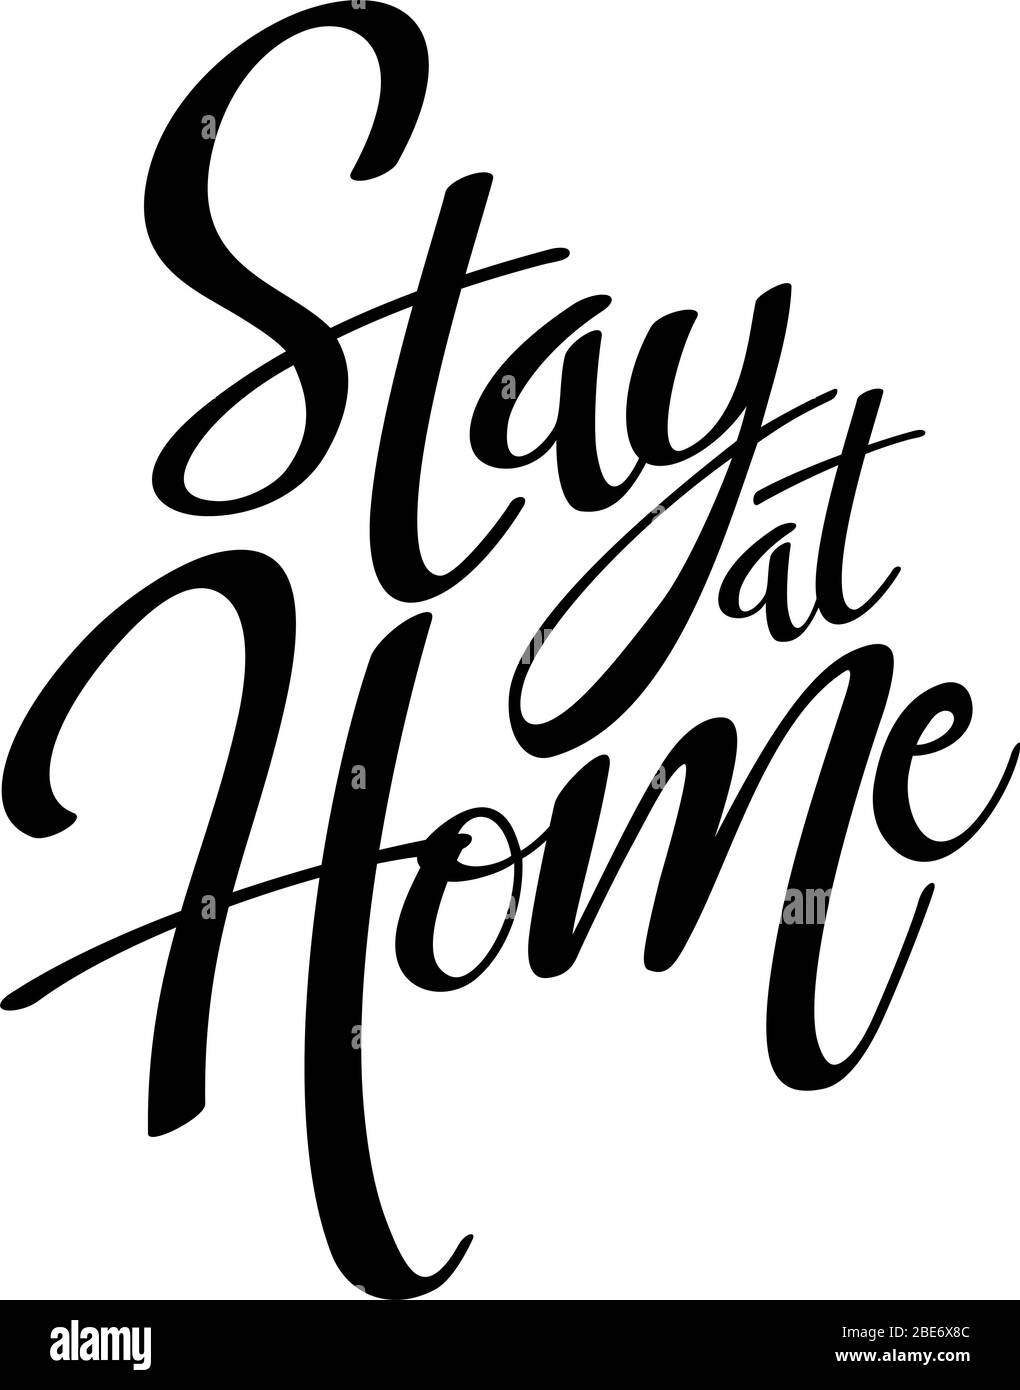 Stay at Home Zitat in schwarz isoliert auf weißem Hintergrund. Soziale Distanzierungskampagne während der vierzeiligen Coronavirus-Pandemie Stock Vektor